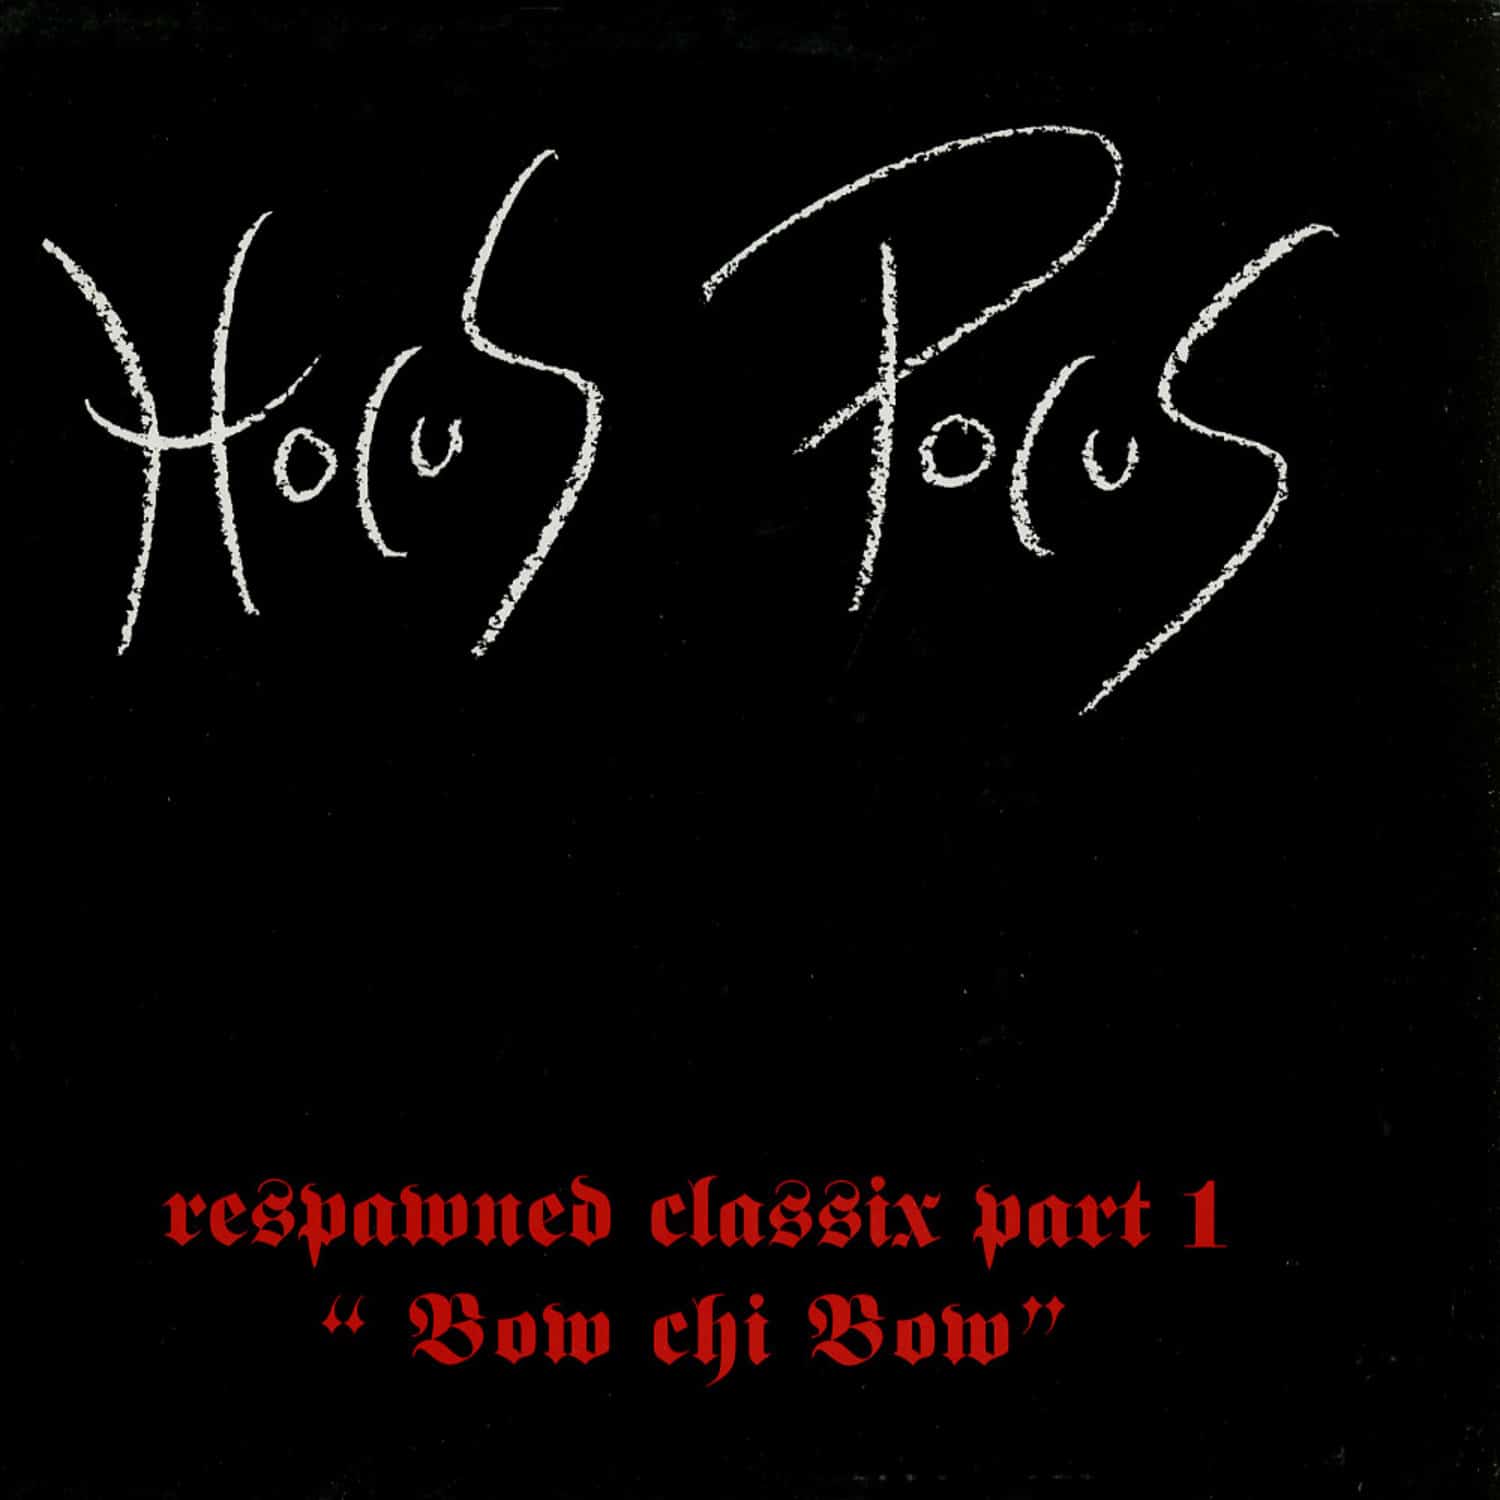 Hocus Pocus - BOW CHI BOW